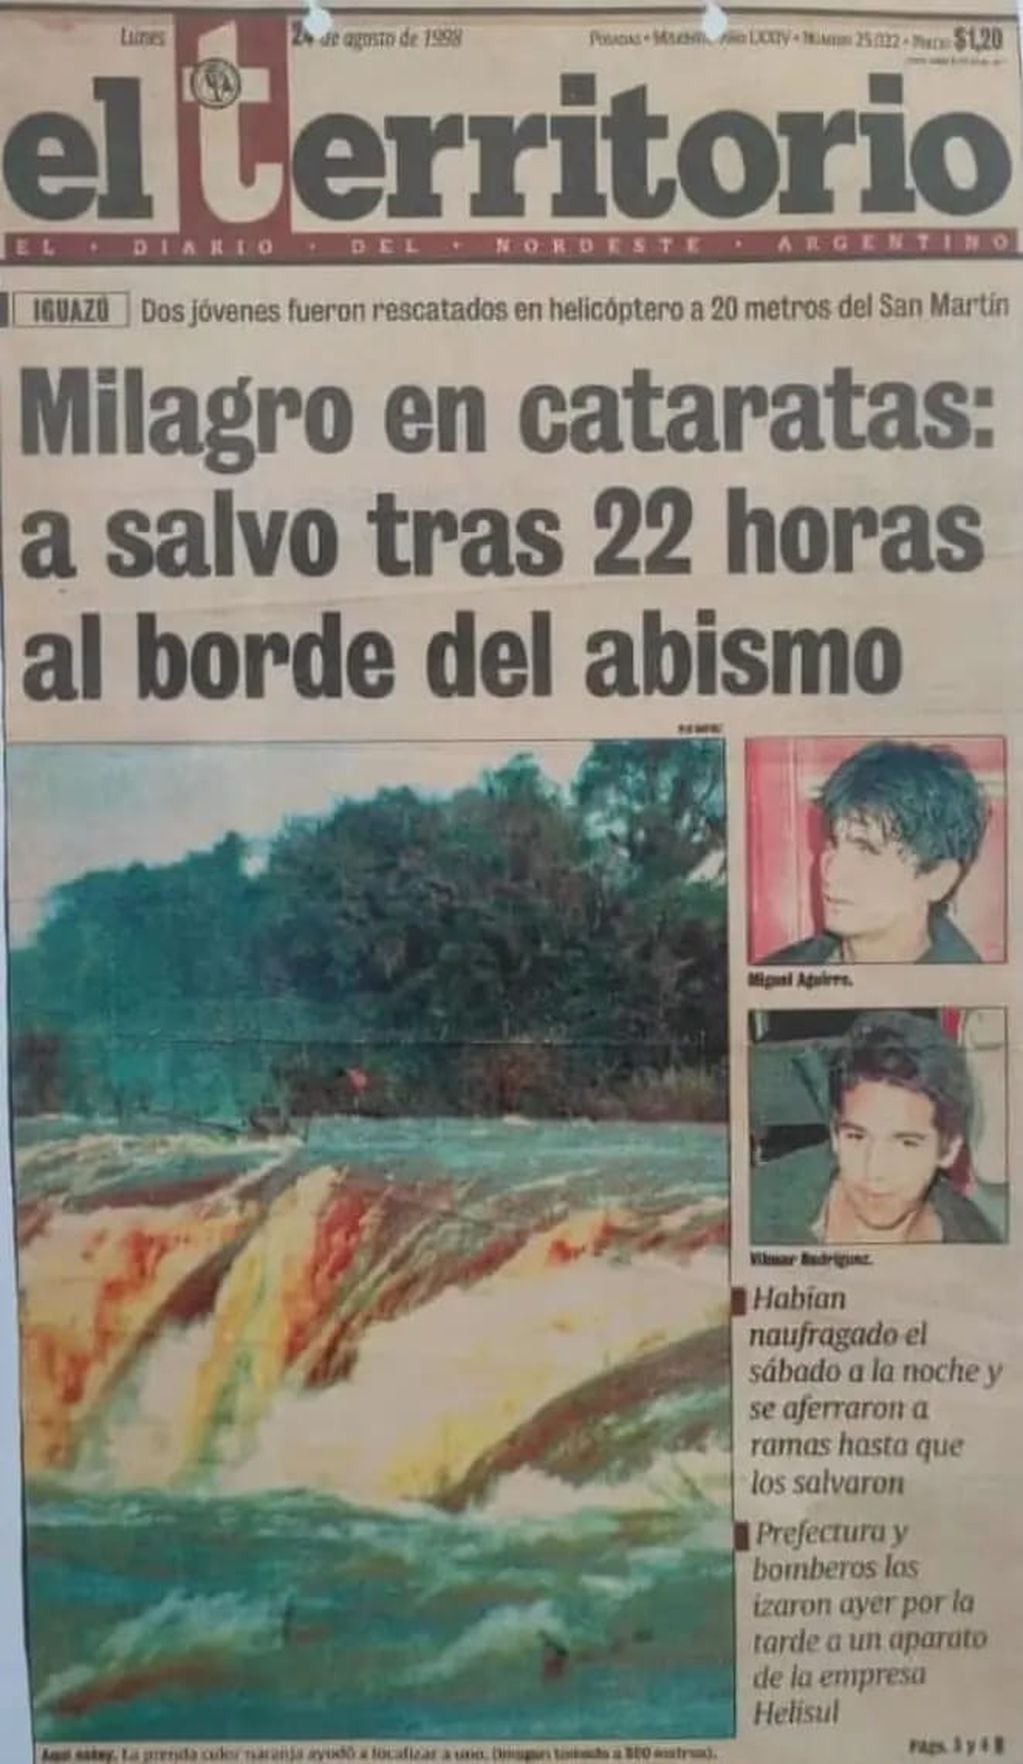 Un día como hoy, hace 25 años, dos jóvenes eran rescatados en Cataratas: el milagro iguazuense.